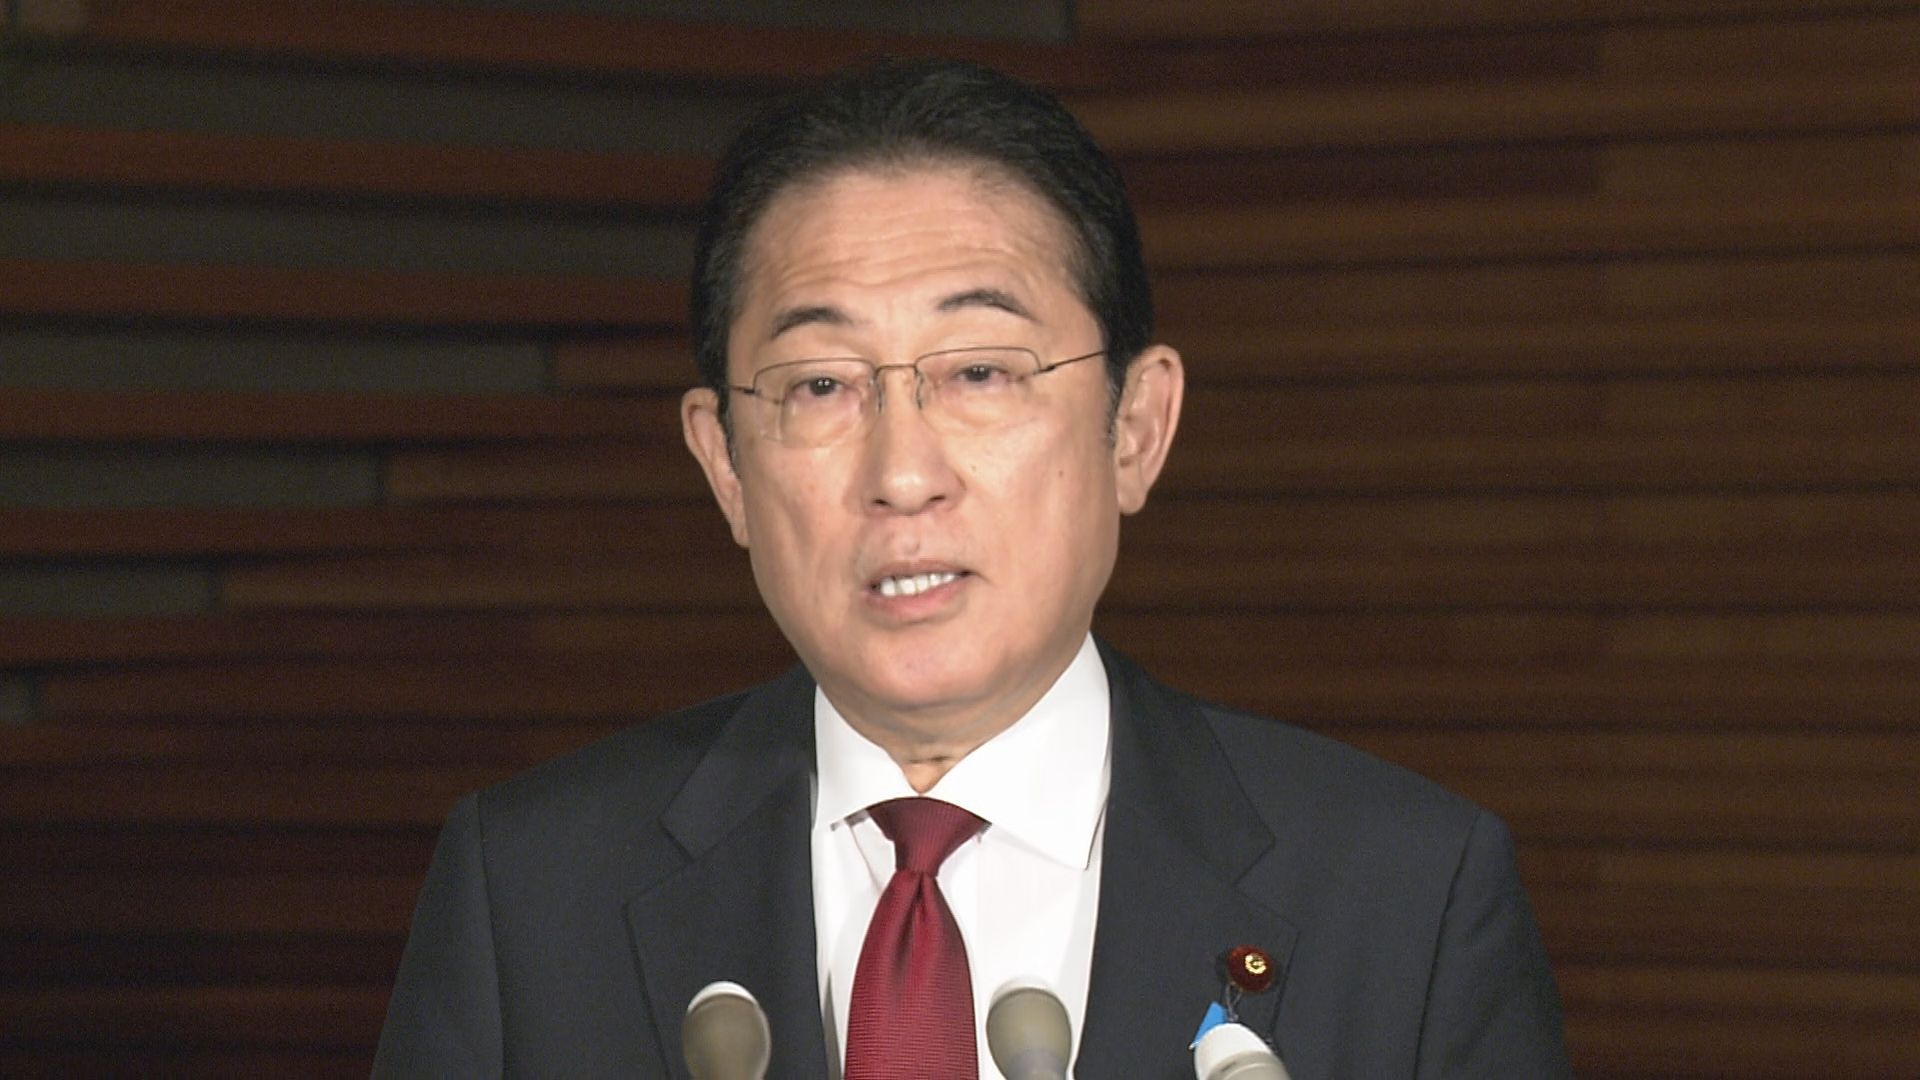 【速報】岸田総理「引き続き先送りできない課題に全力」内閣不信任案否決で